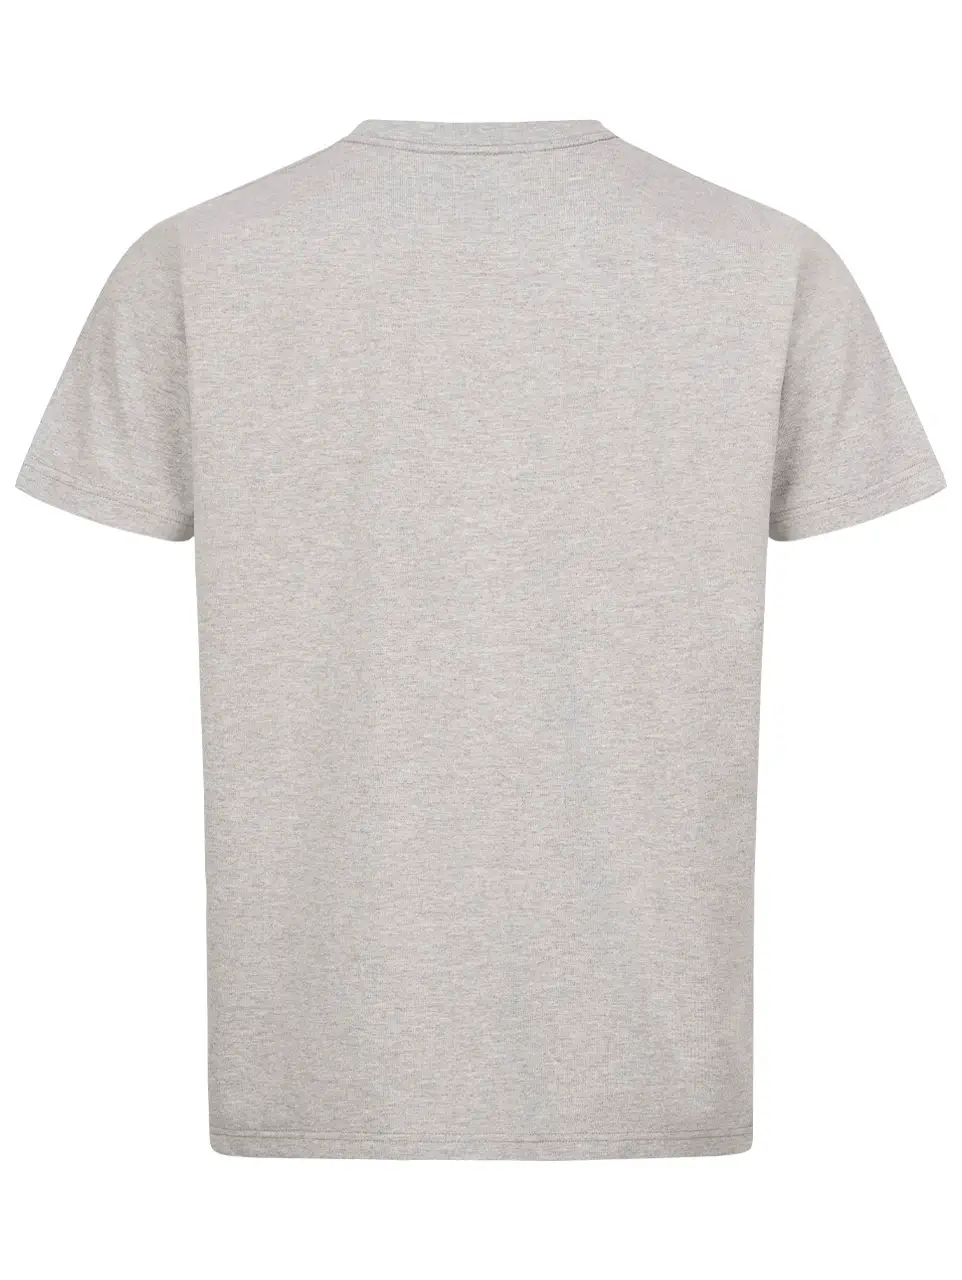 Blaser-T-Shirt mit Print in Grau-Melange Rückansicht